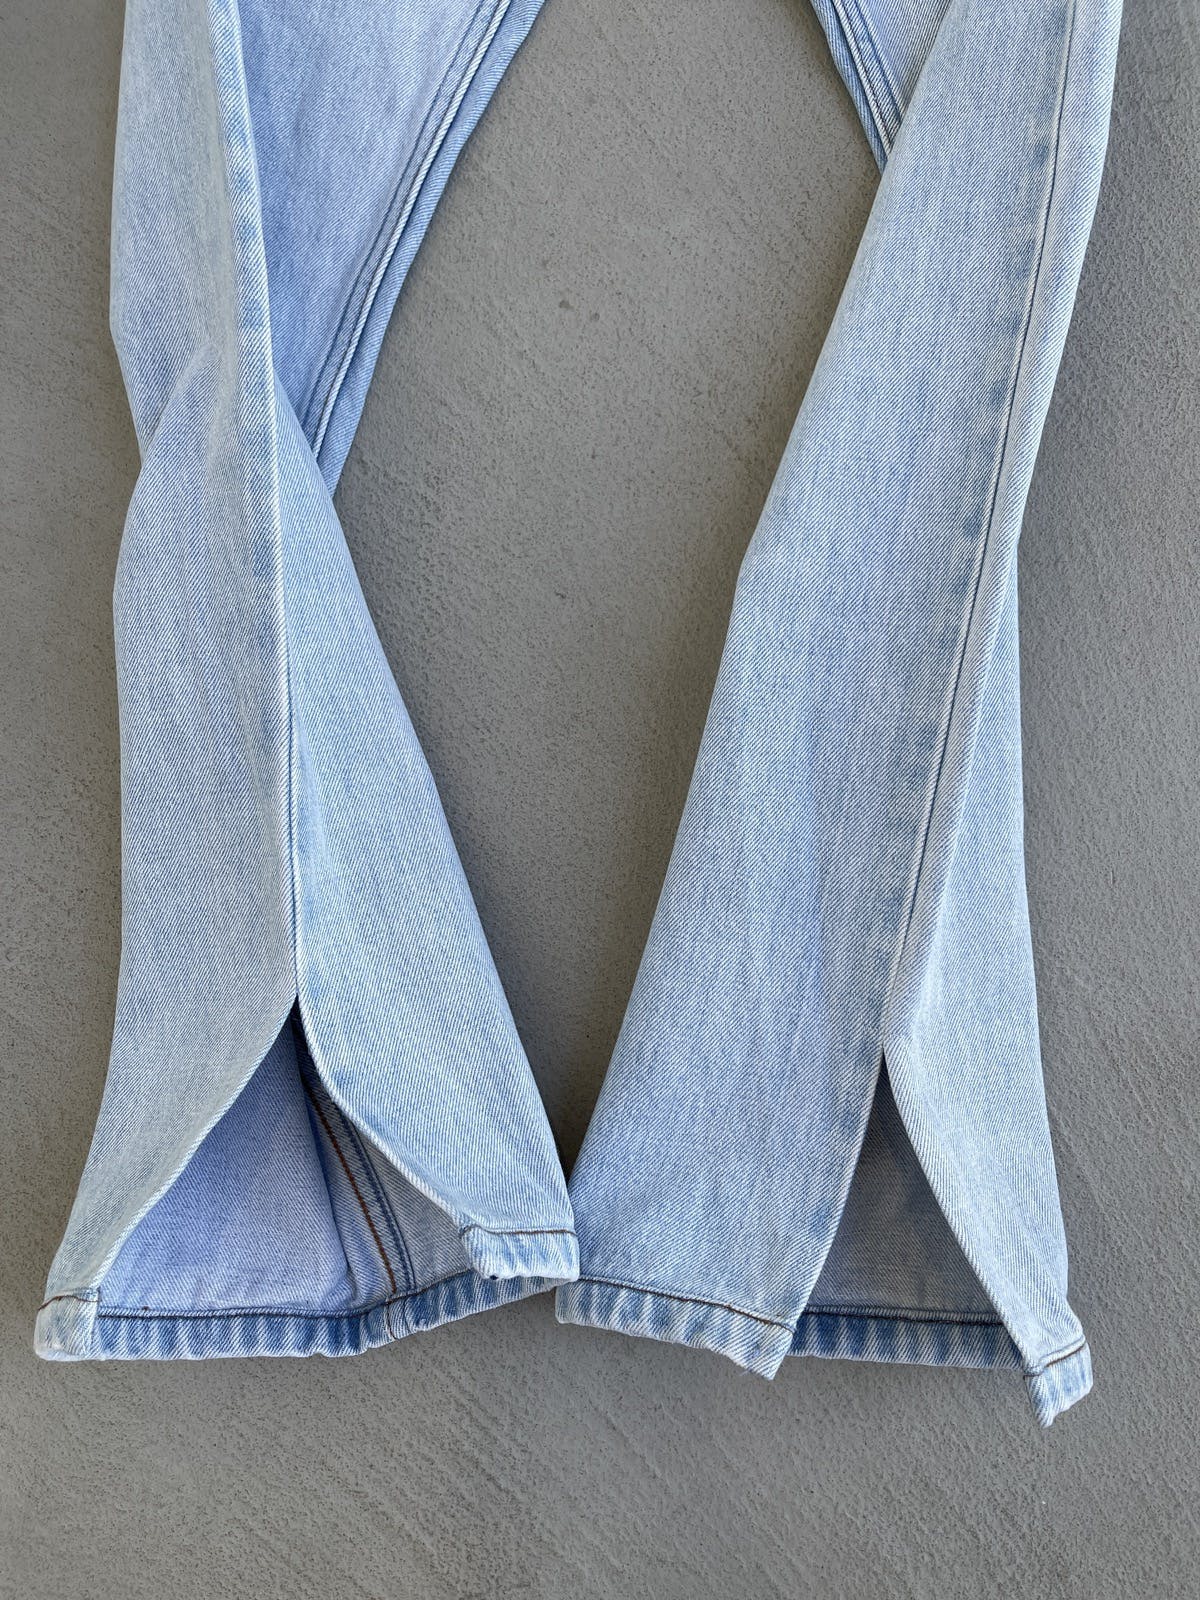 A.P.C. x Jjjjound Petit Standard Flare Denim Jeans - 8